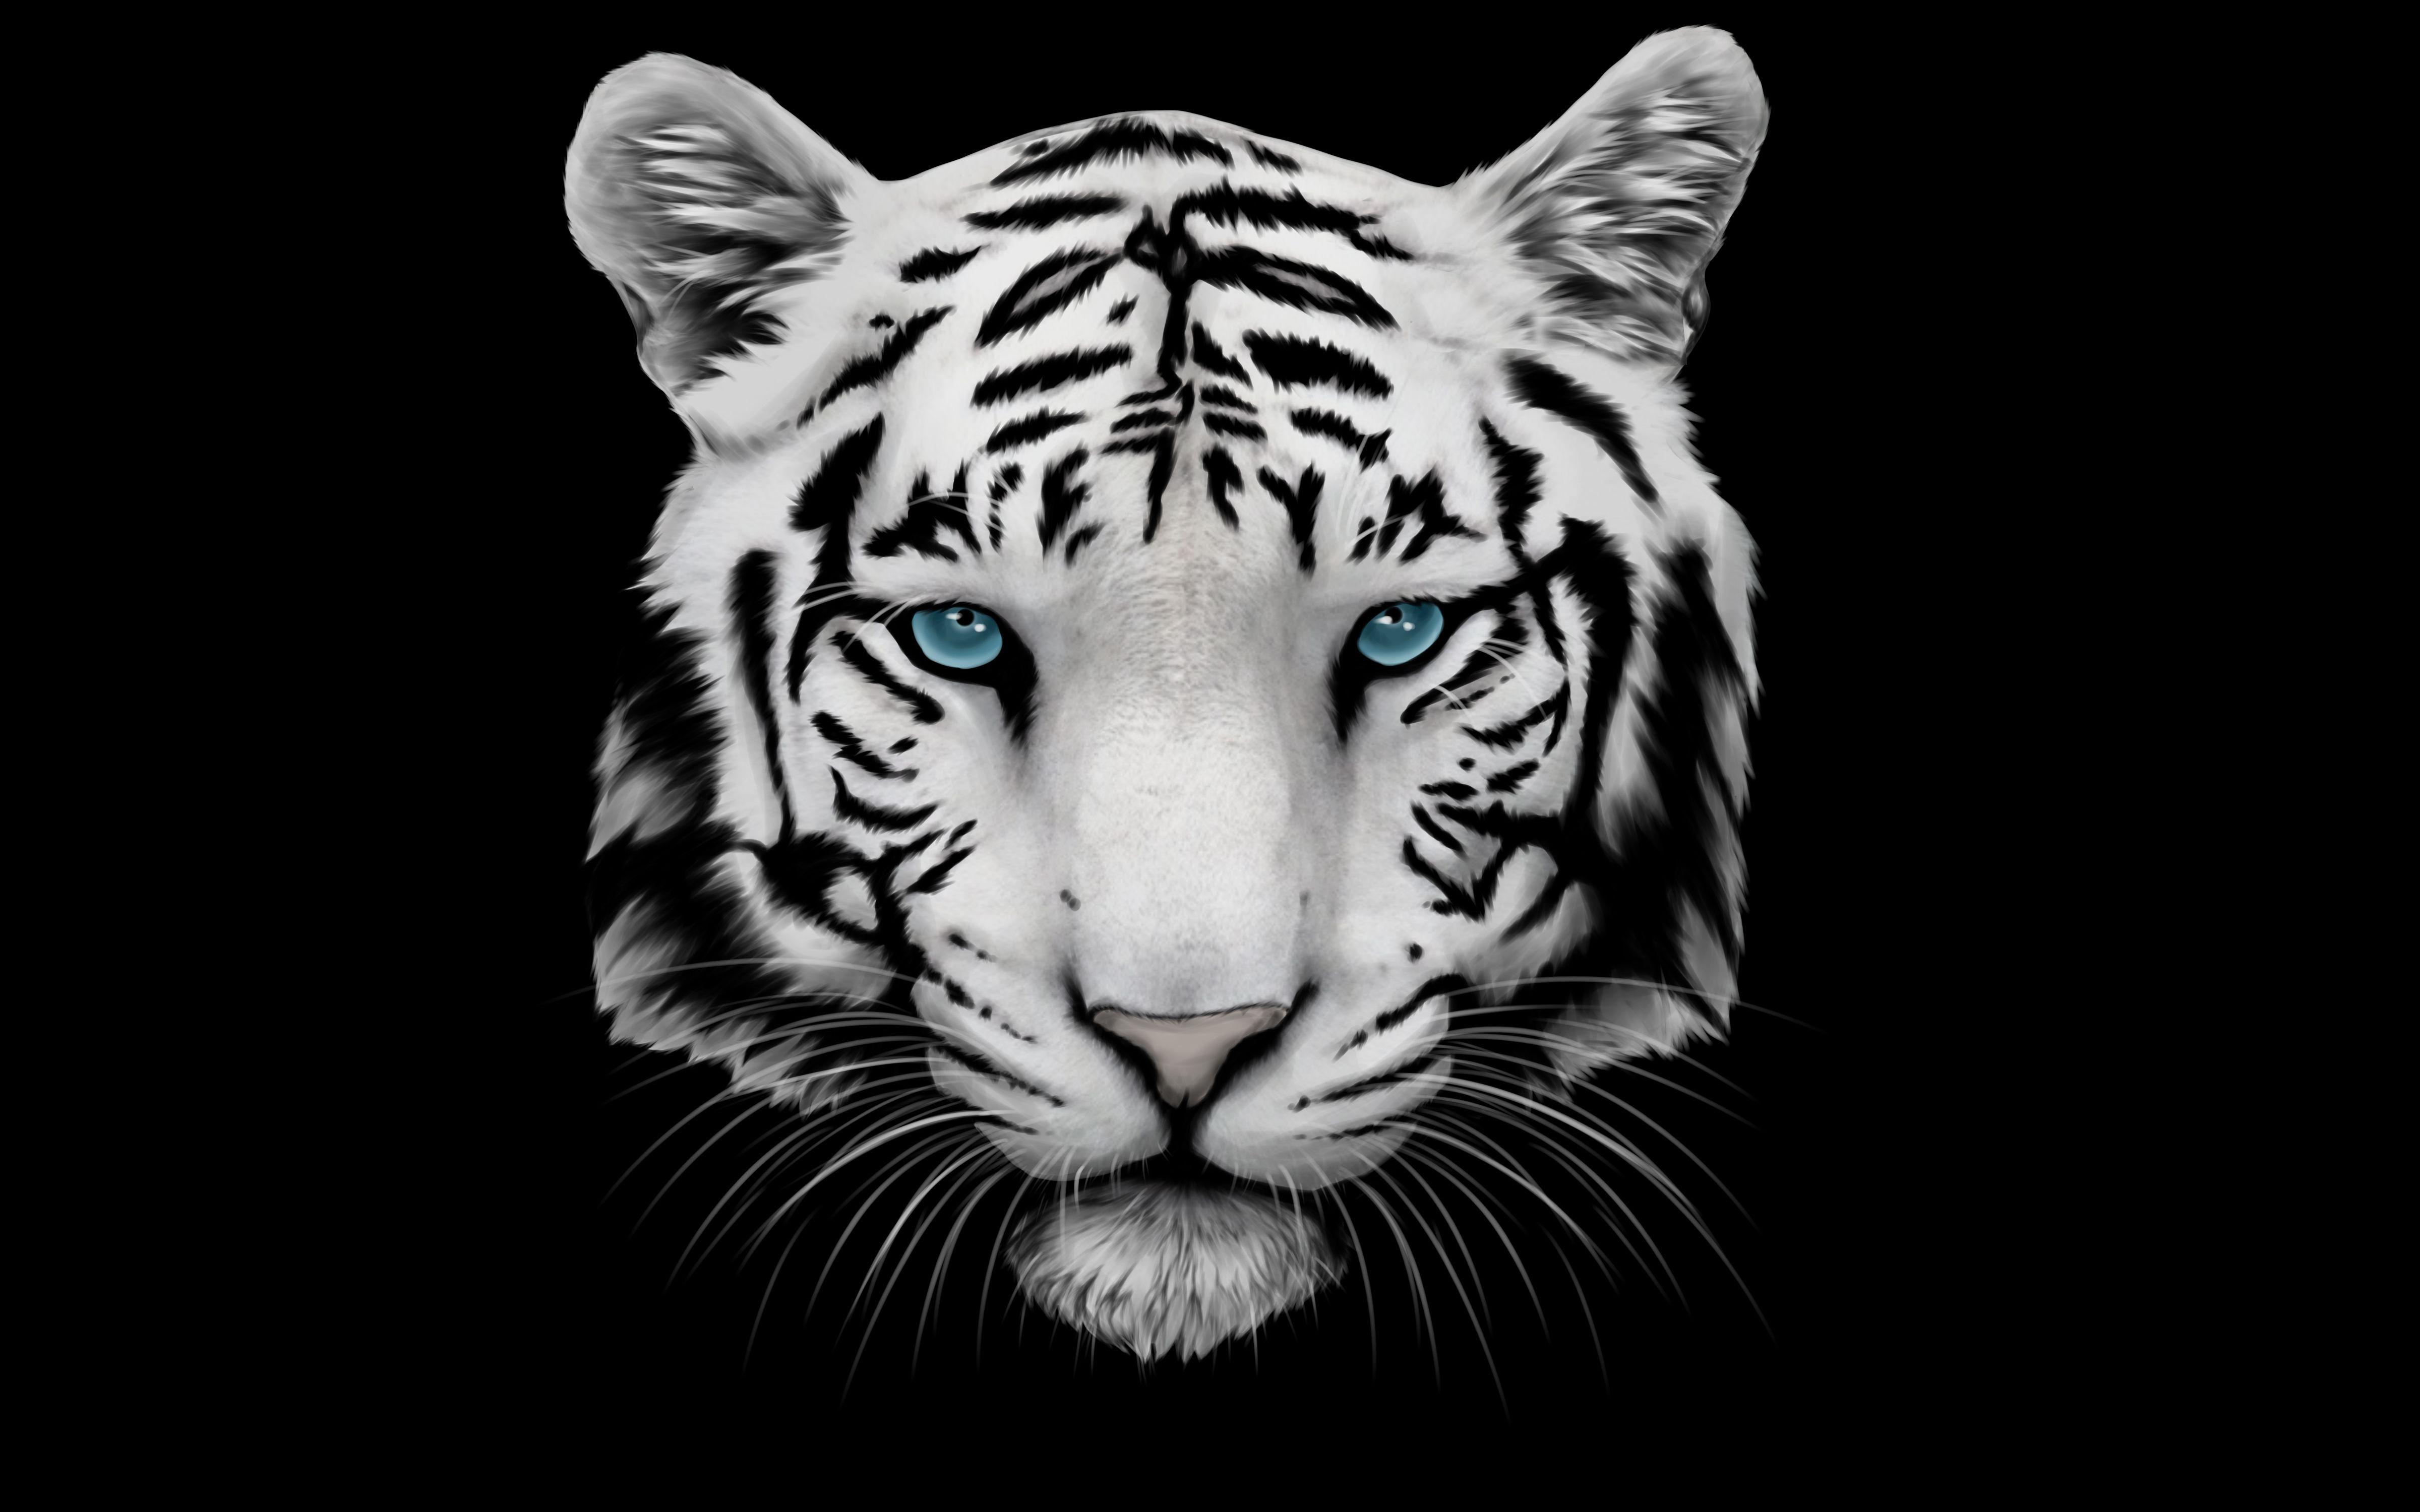 Tiger Background. Tiger wallpaper, Tiger image, White tiger